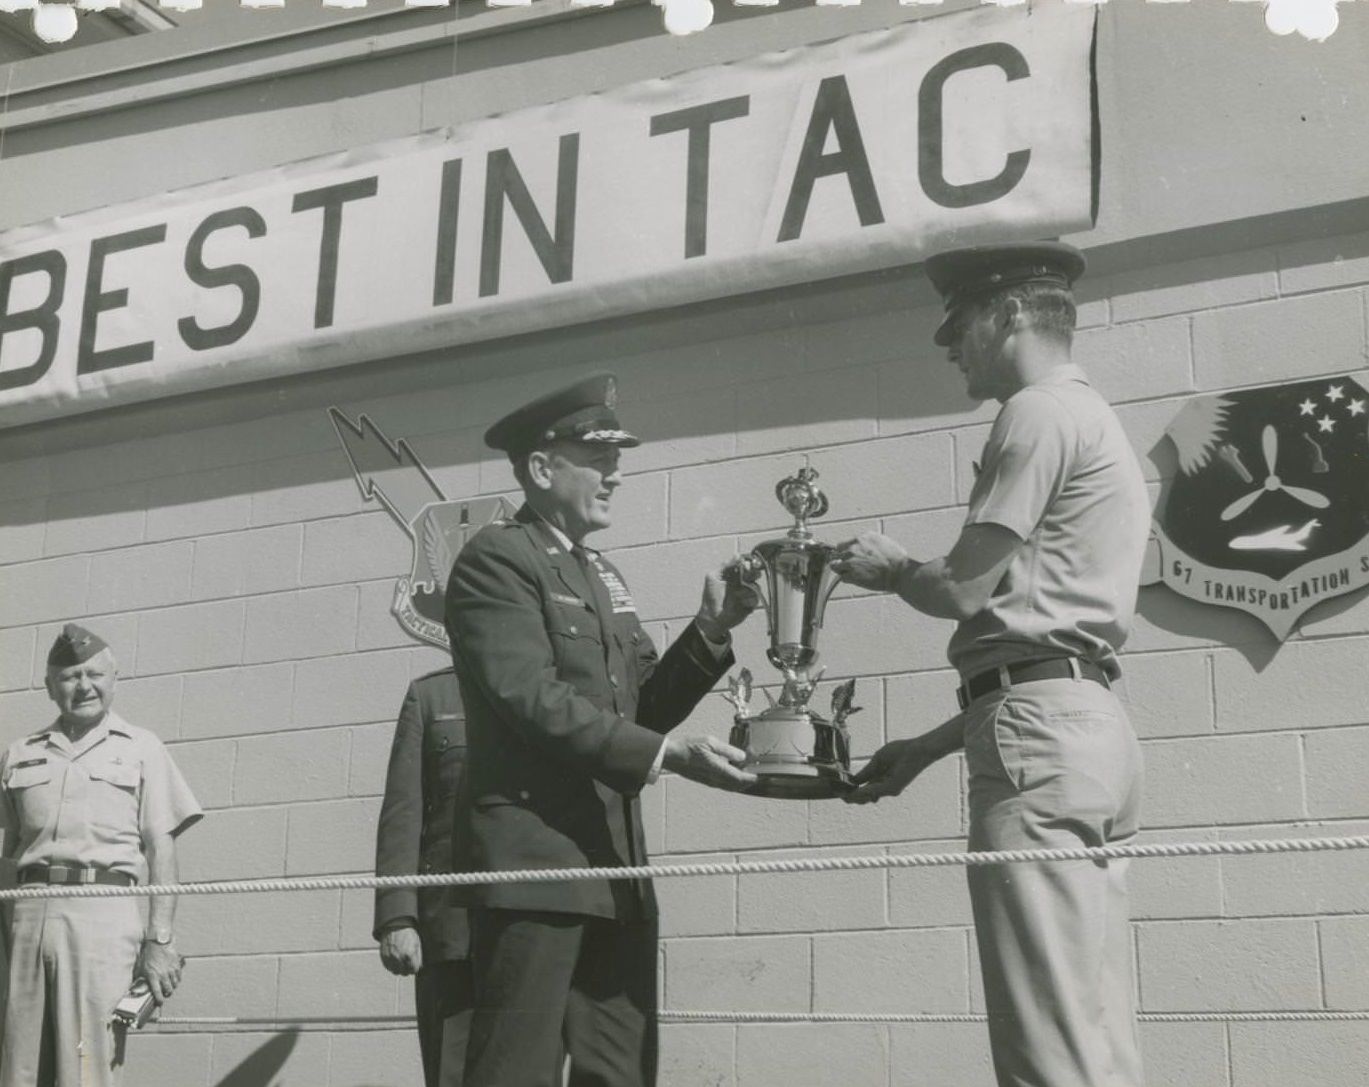 Best in TAC Award Ceremony, 1970